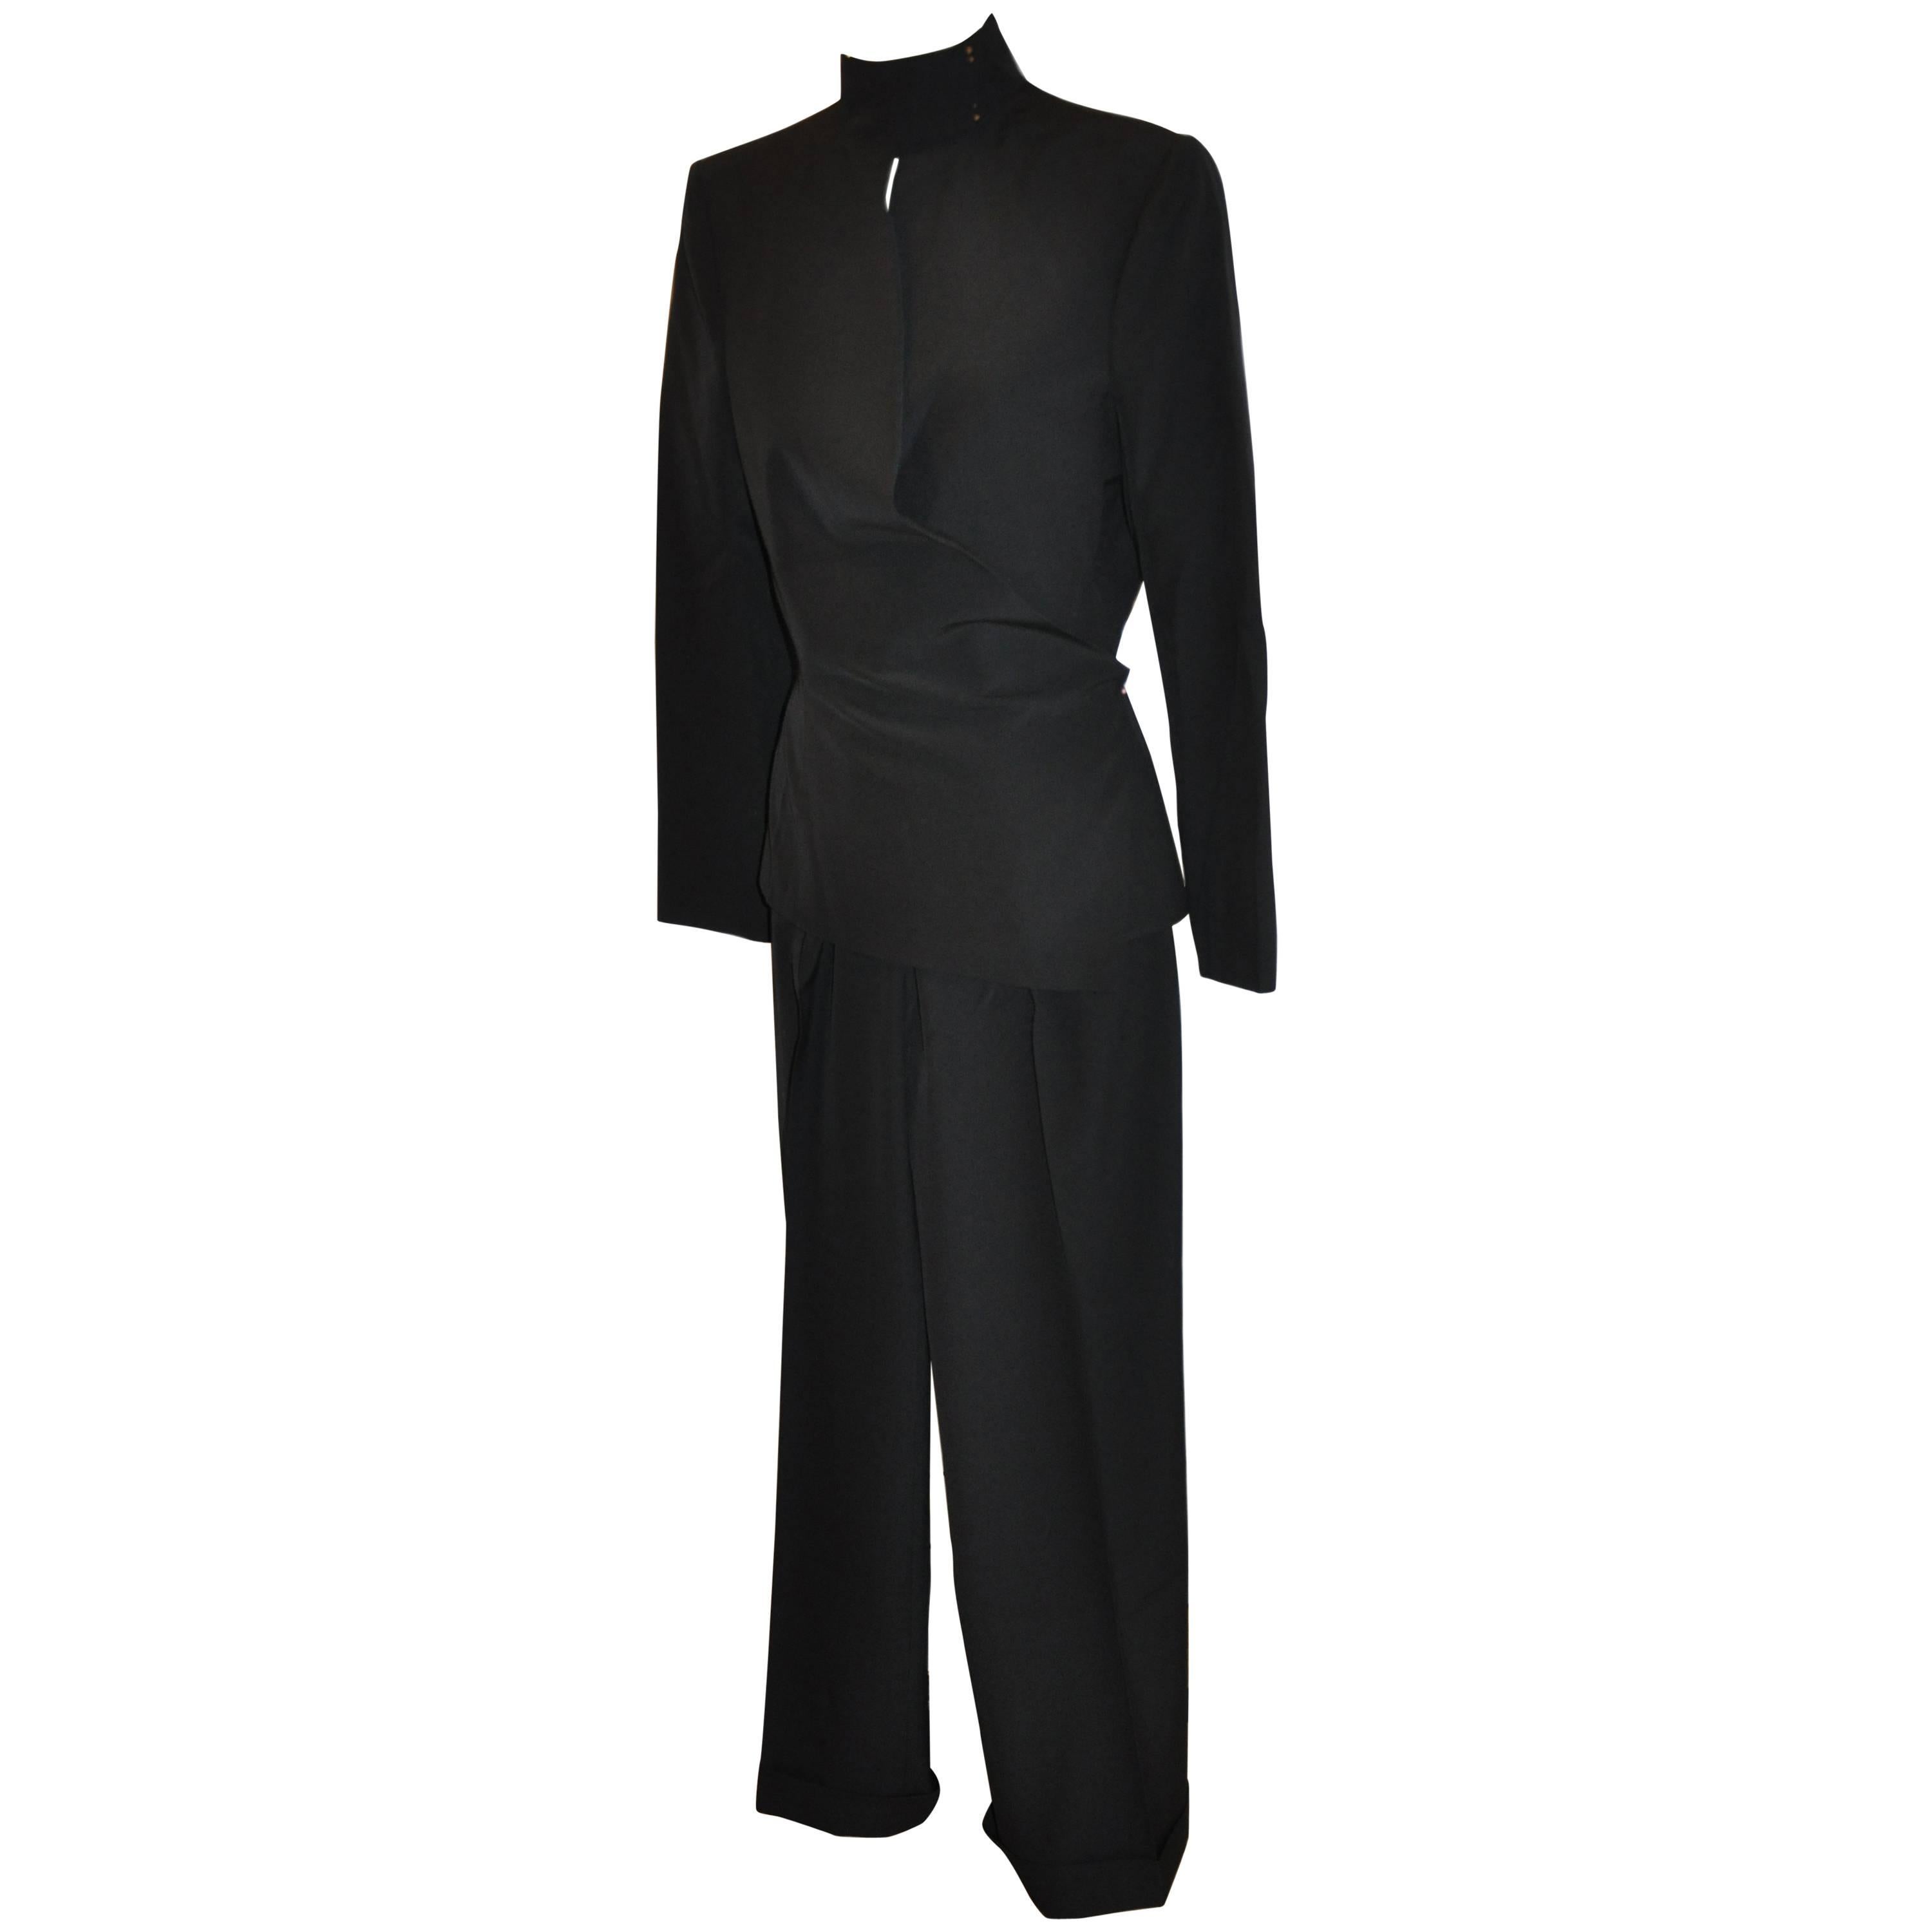 Yves Saint Laurent Signature "Asymmetric" Black Pantsuit Ensemble For Sale